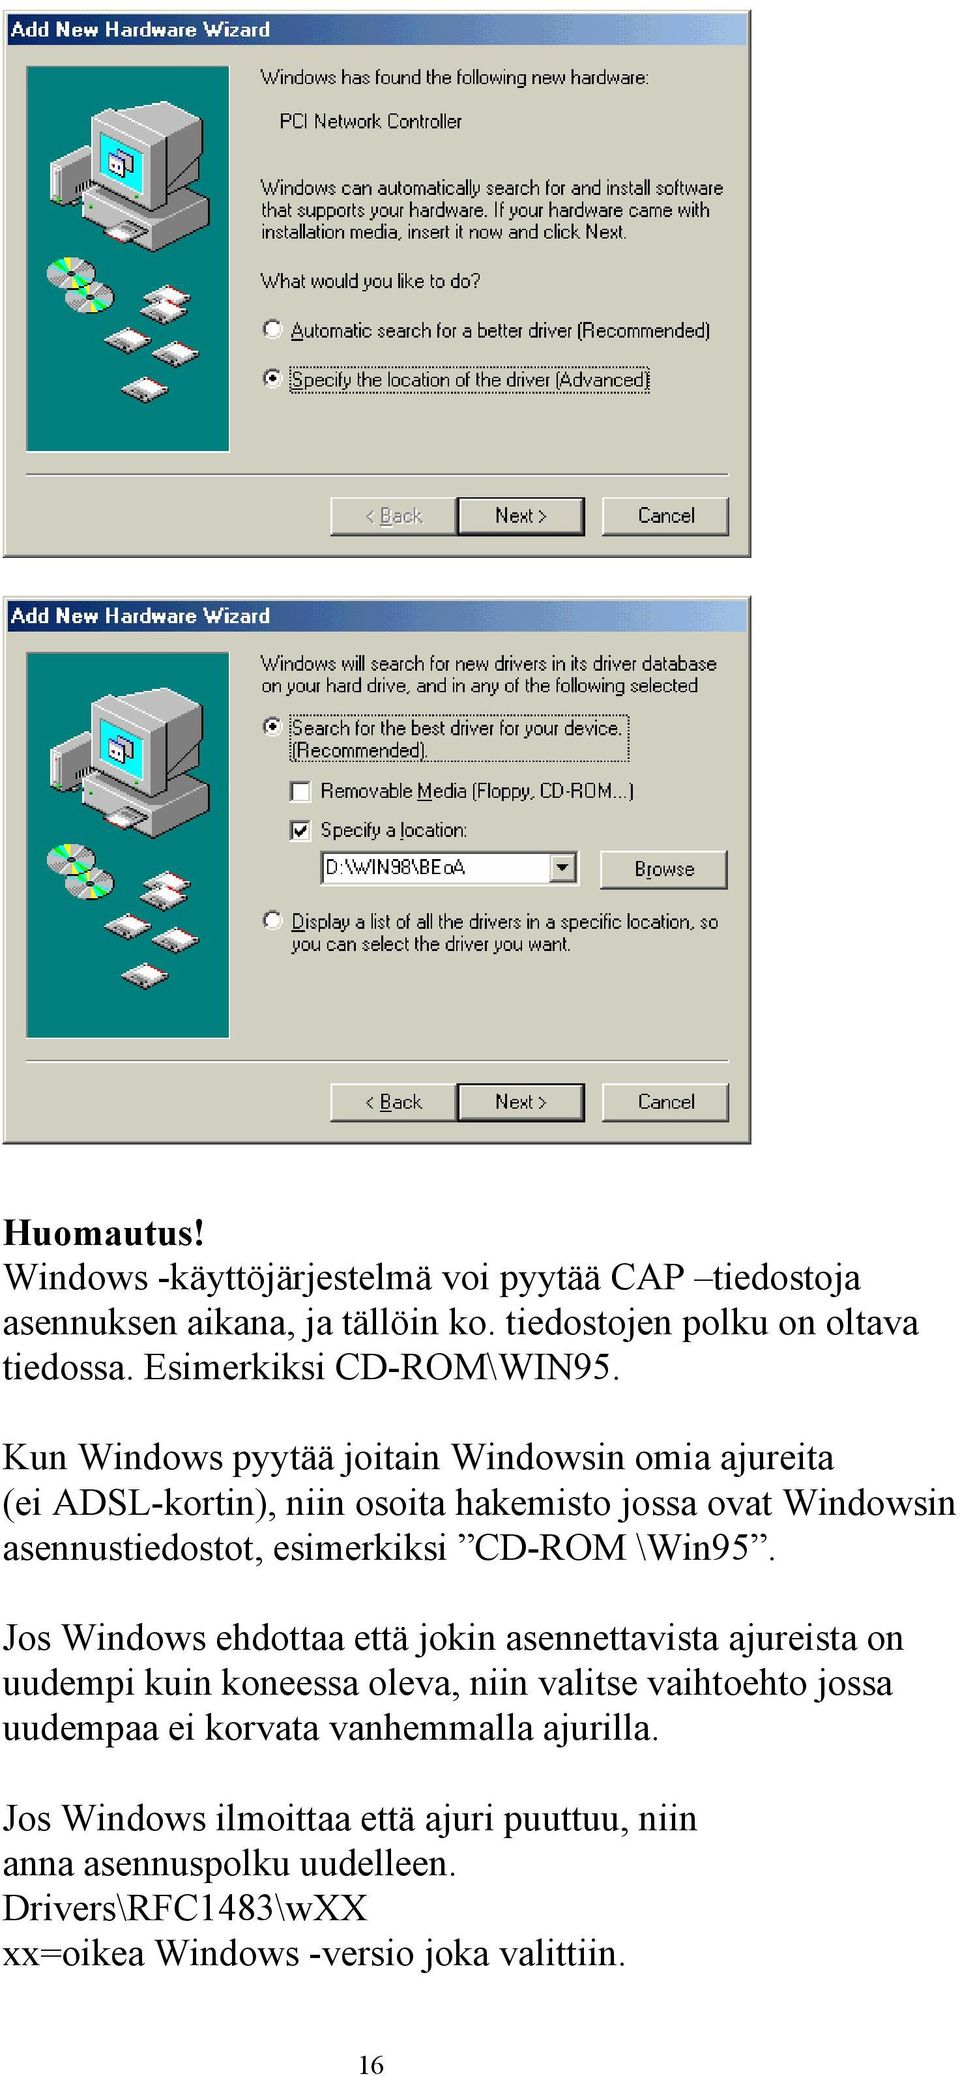 Kun Windows pyytää joitain Windowsin omia ajureita (ei ADSL-kortin), niin osoita hakemisto jossa ovat Windowsin asennustiedostot, esimerkiksi CD-ROM